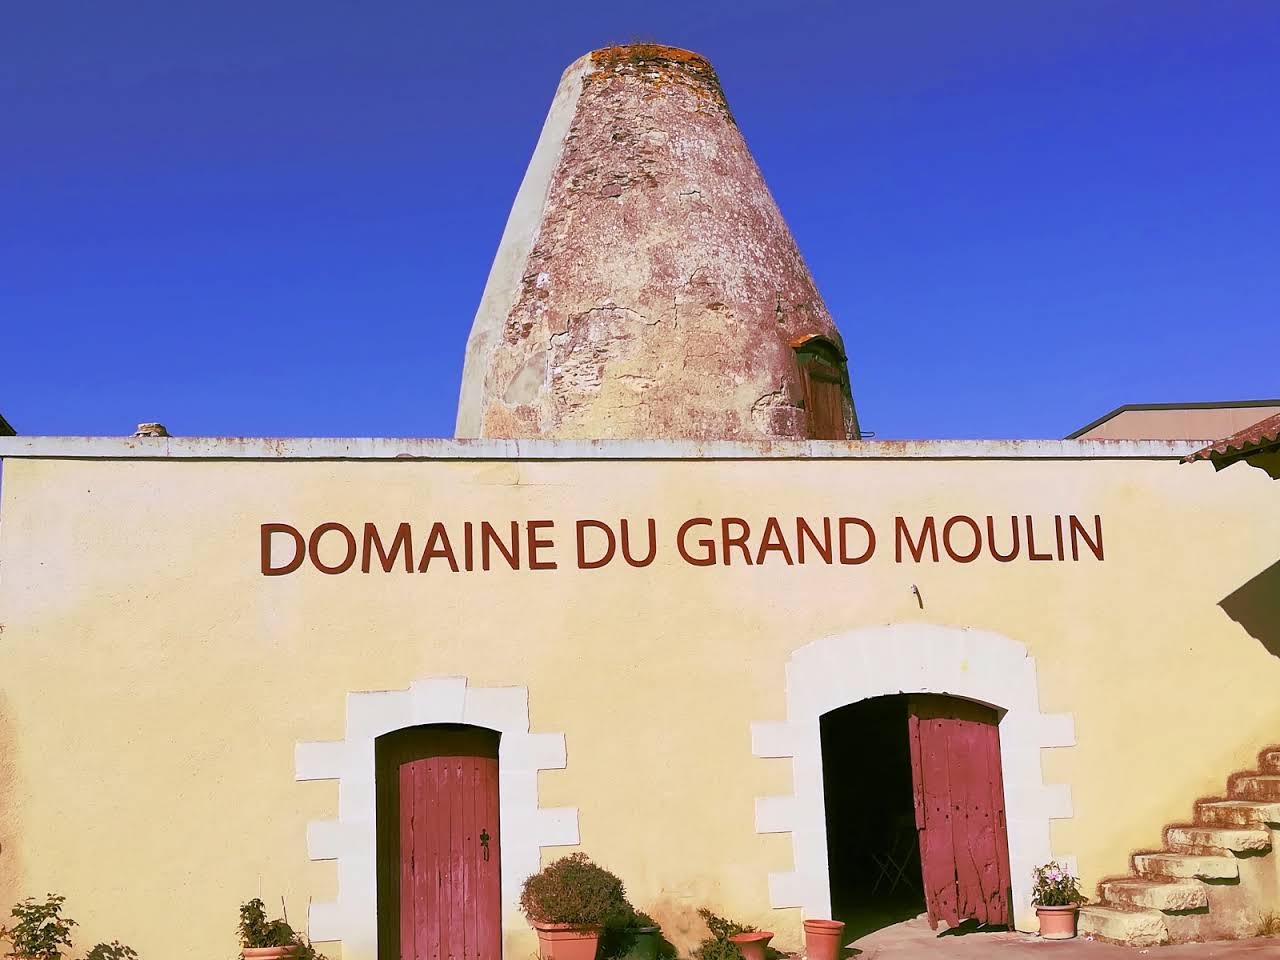 Domaine du Grand Moulin